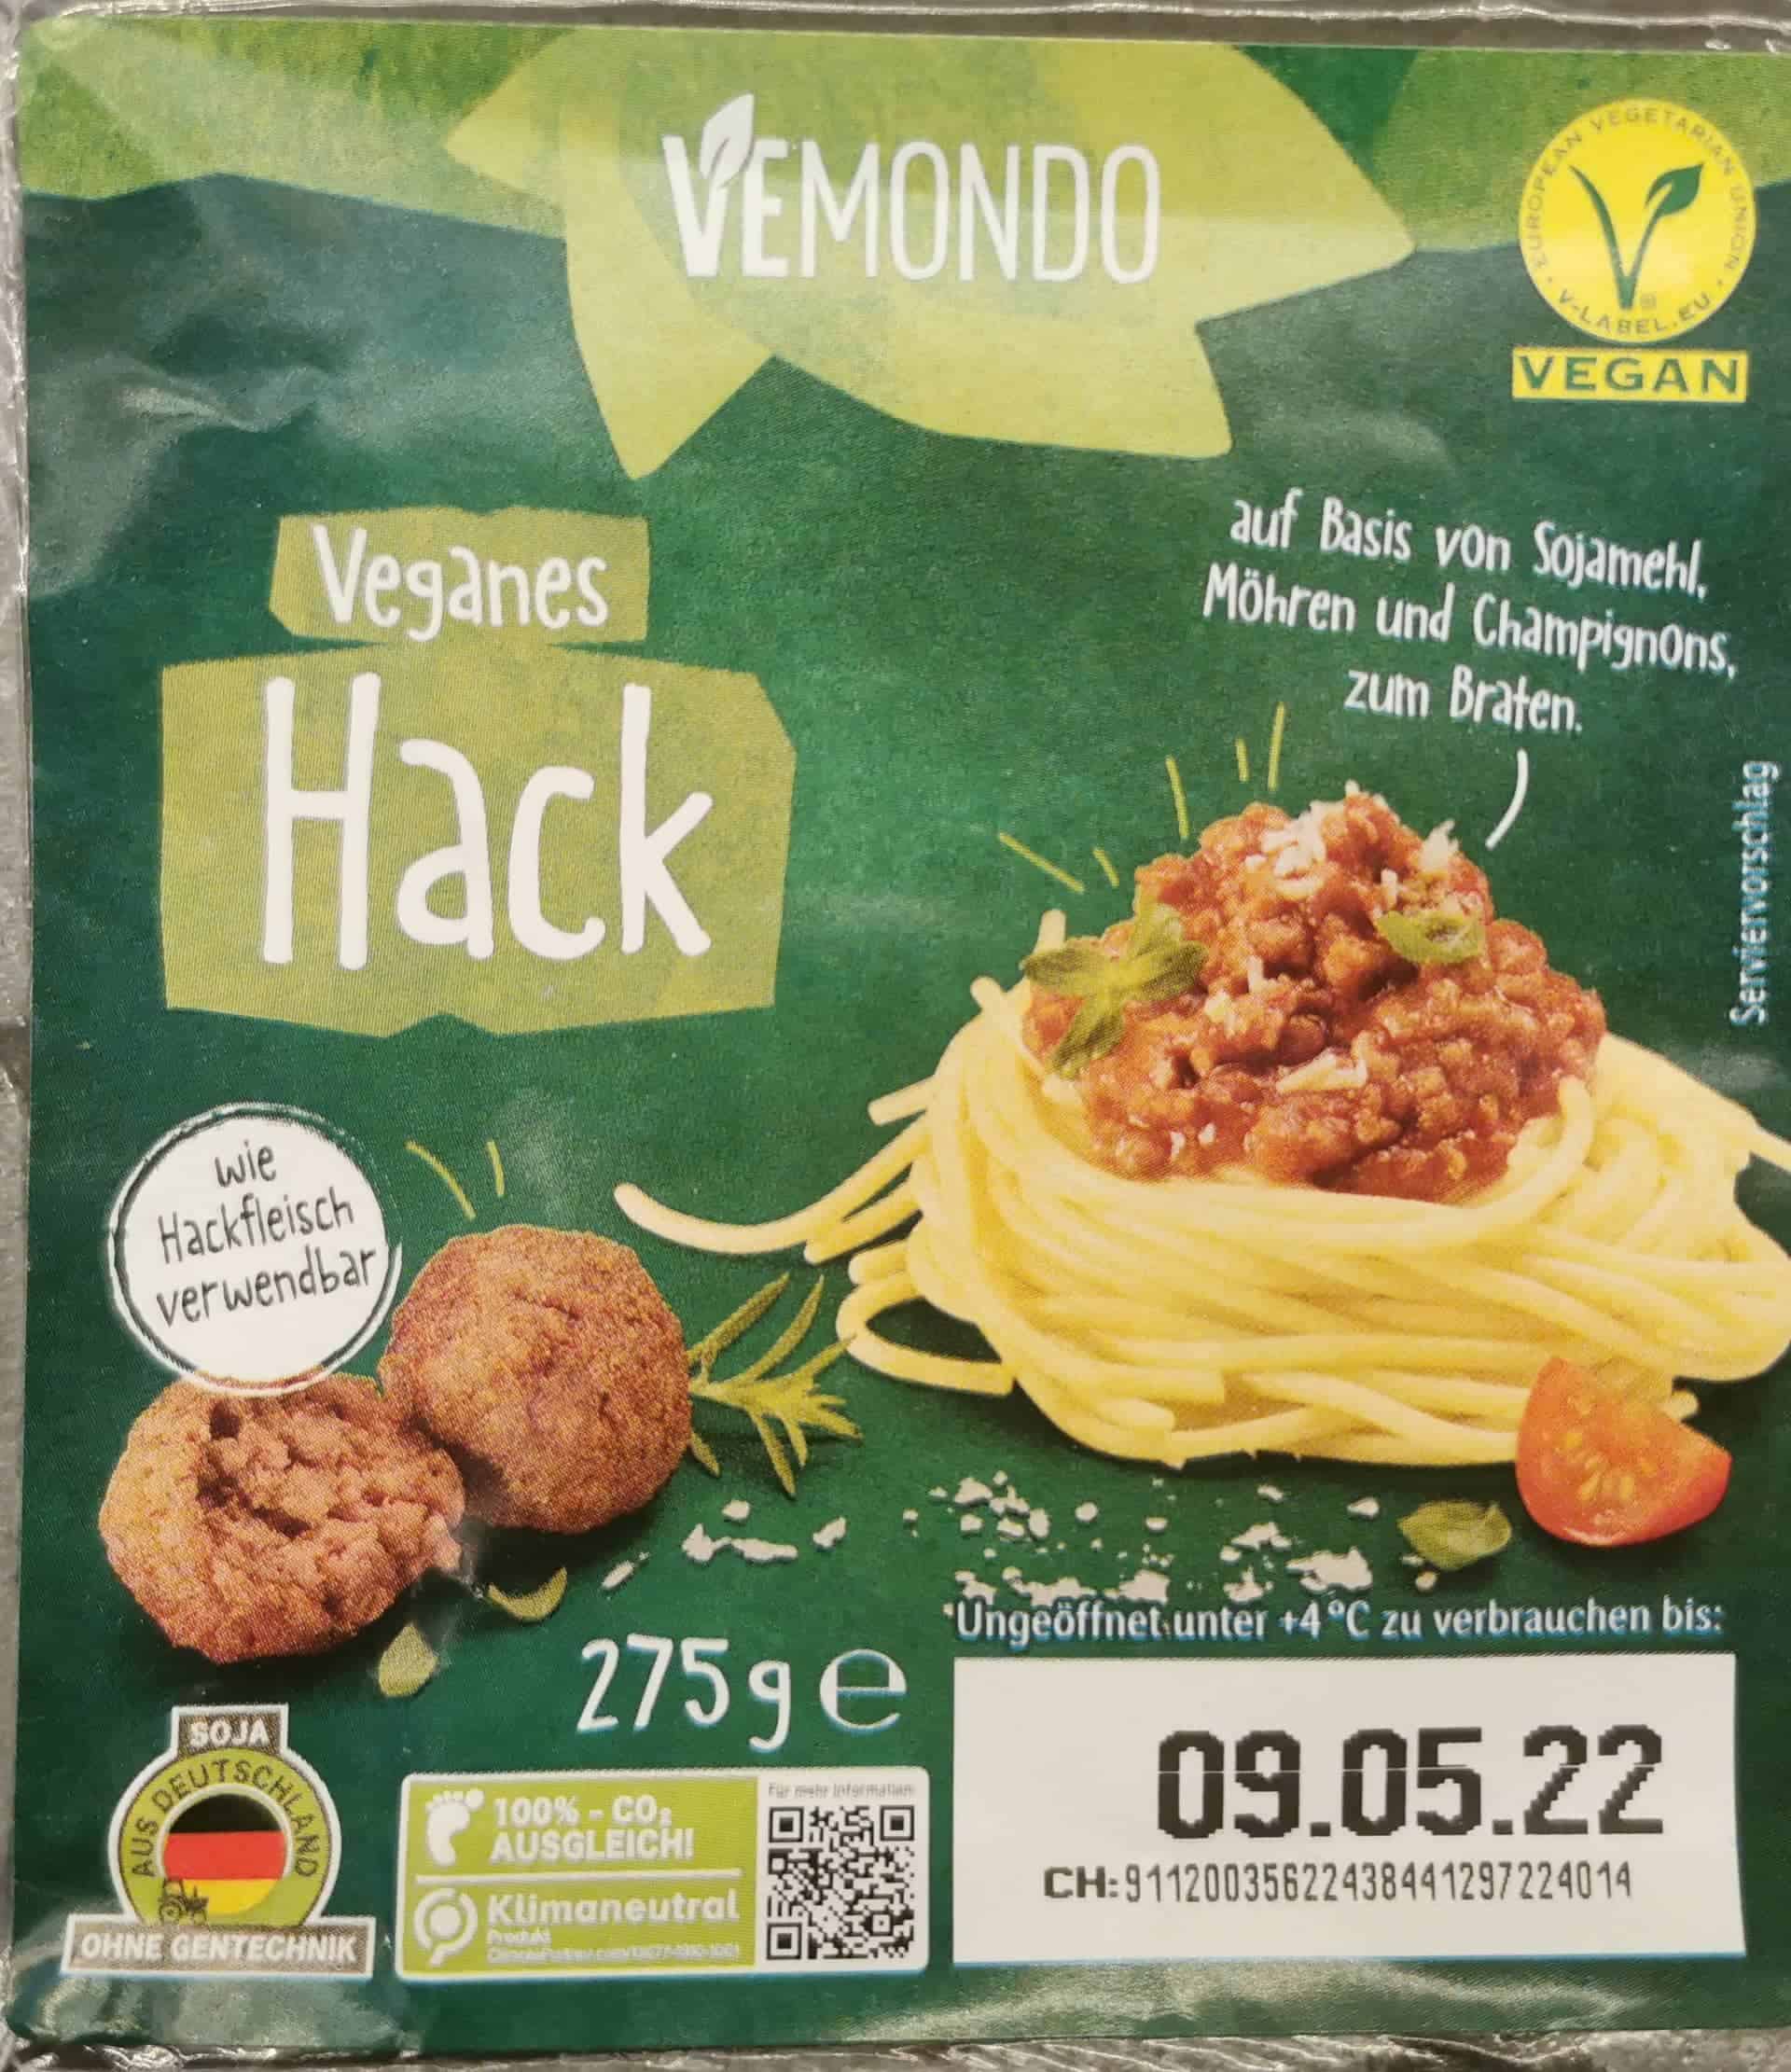 Vemondo: Veganes Hack